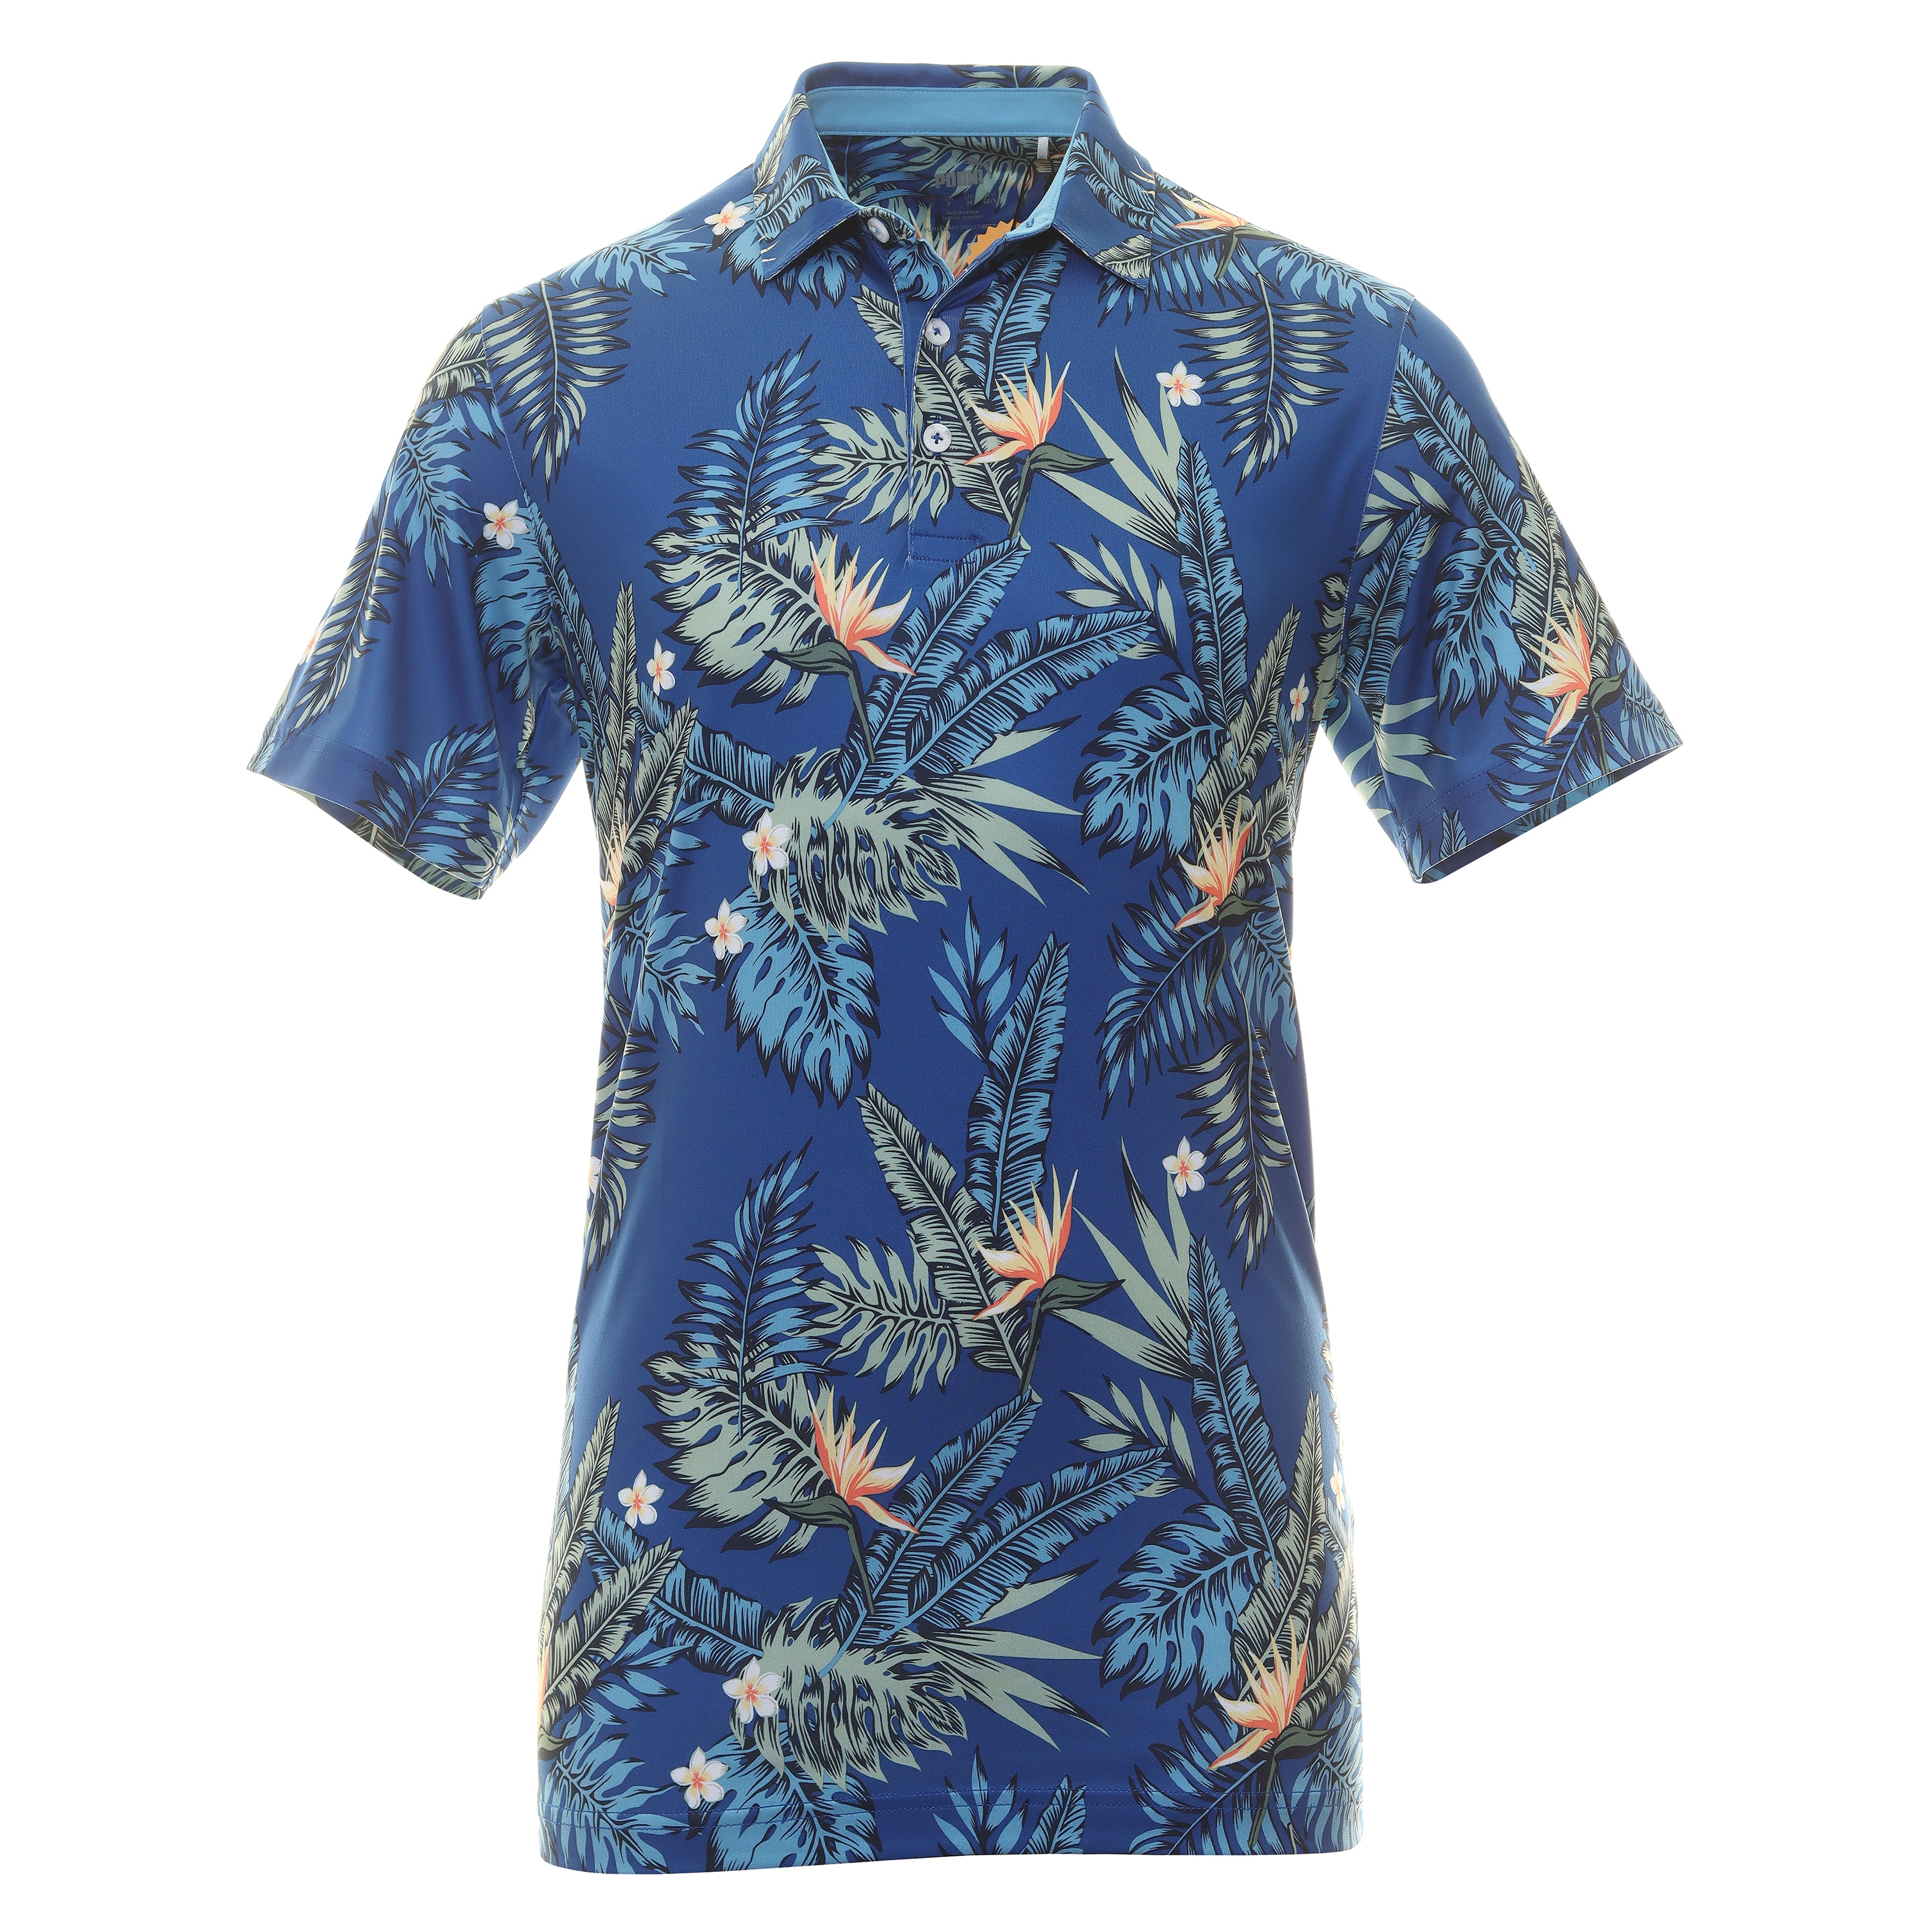 Puma Golf Aloha Polo Shirt 621556 Festive Blue 05 | Function18 ...